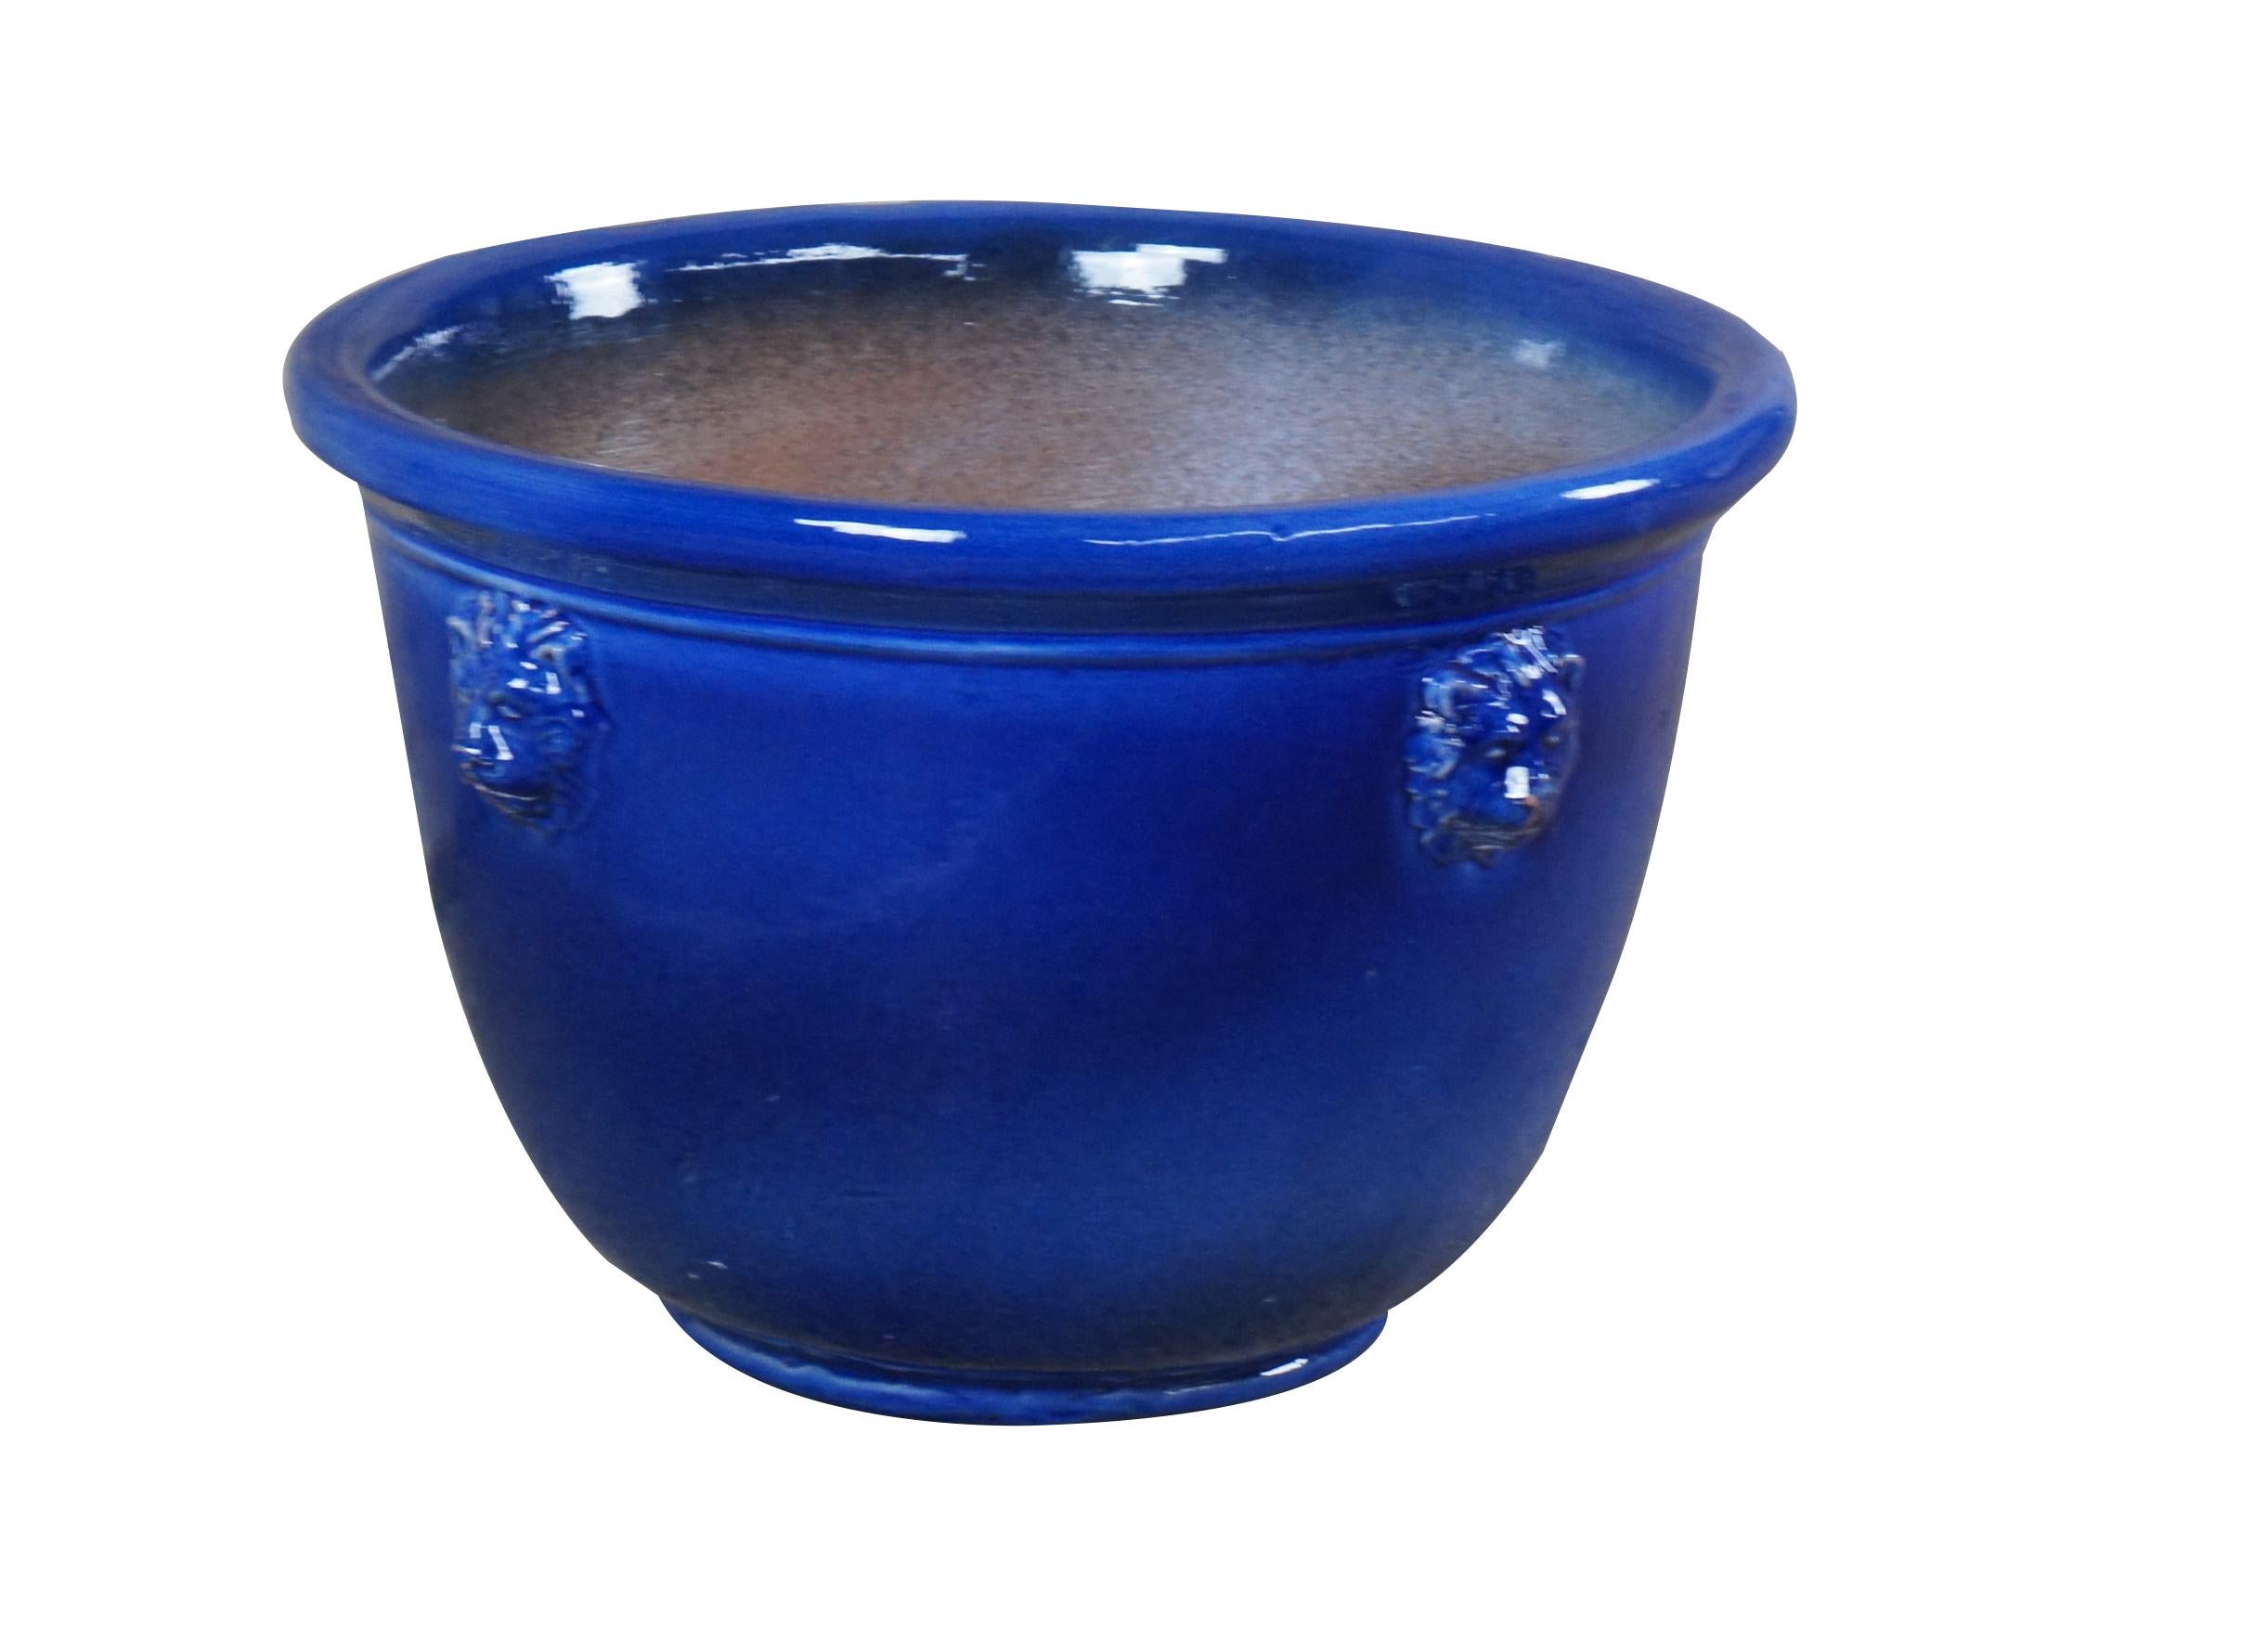 Handgefertigte blaue Keramikkanne von Barrielle Aubagne.  Blau glasiert mit Löwenköpfen.  Aubagne ist eine Gemeinde in Südfrankreich 

Abmessungen:
17,5